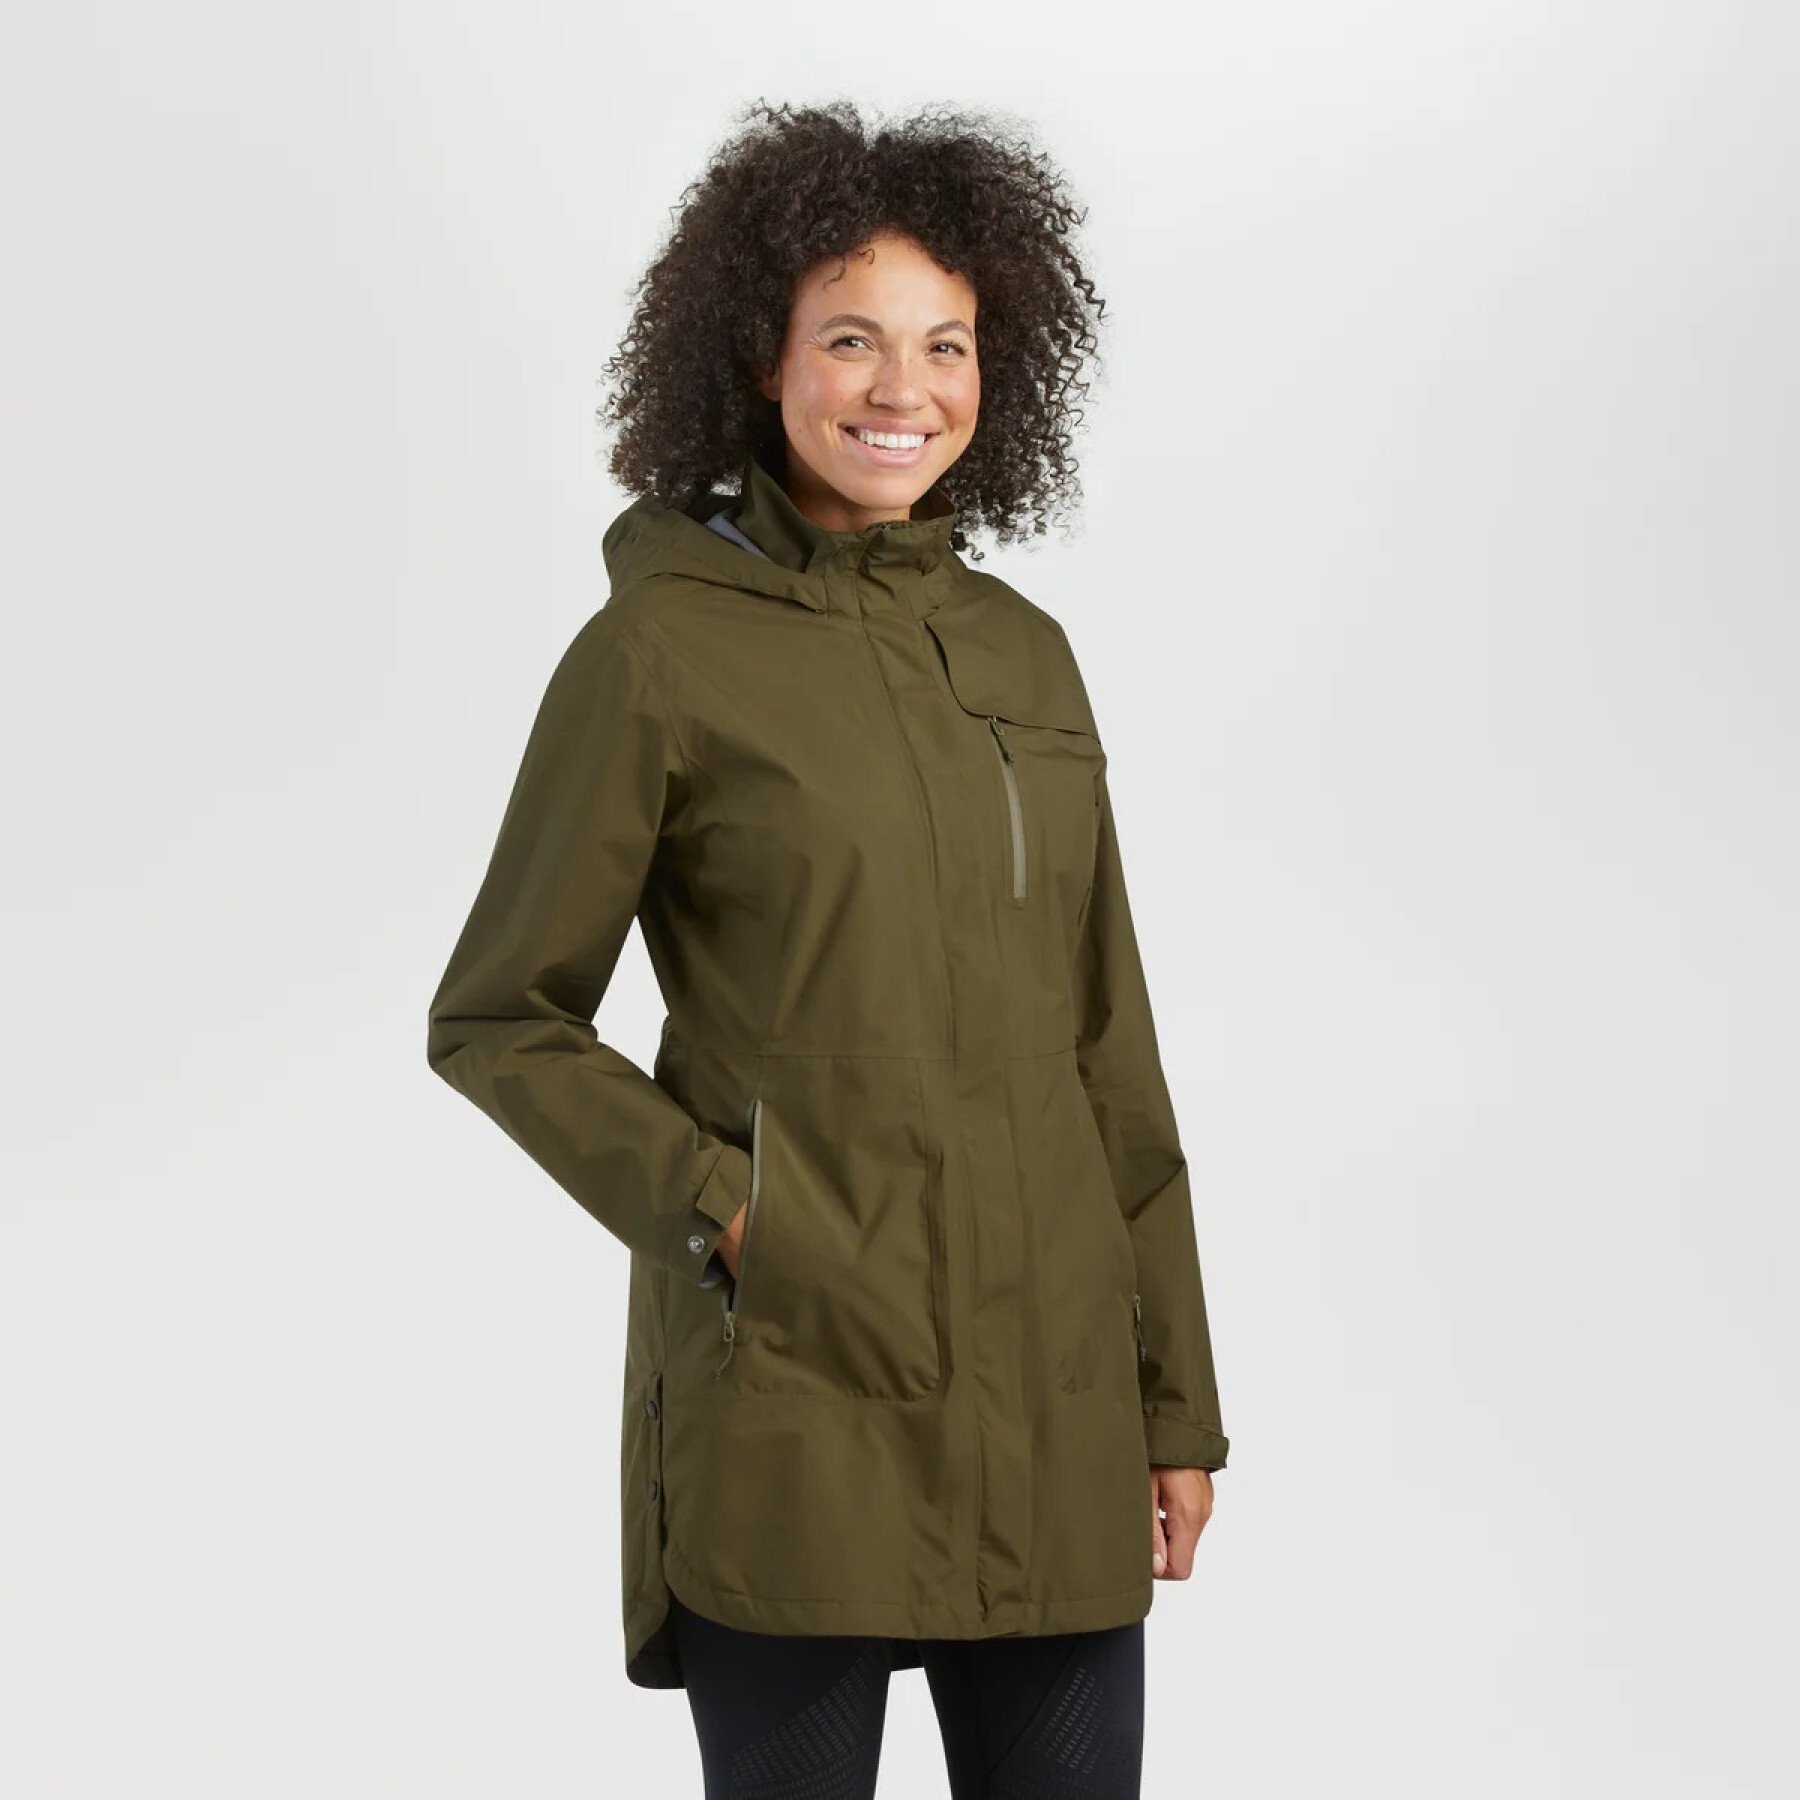 Women's waterproof jacket Outdoor Research Aspire